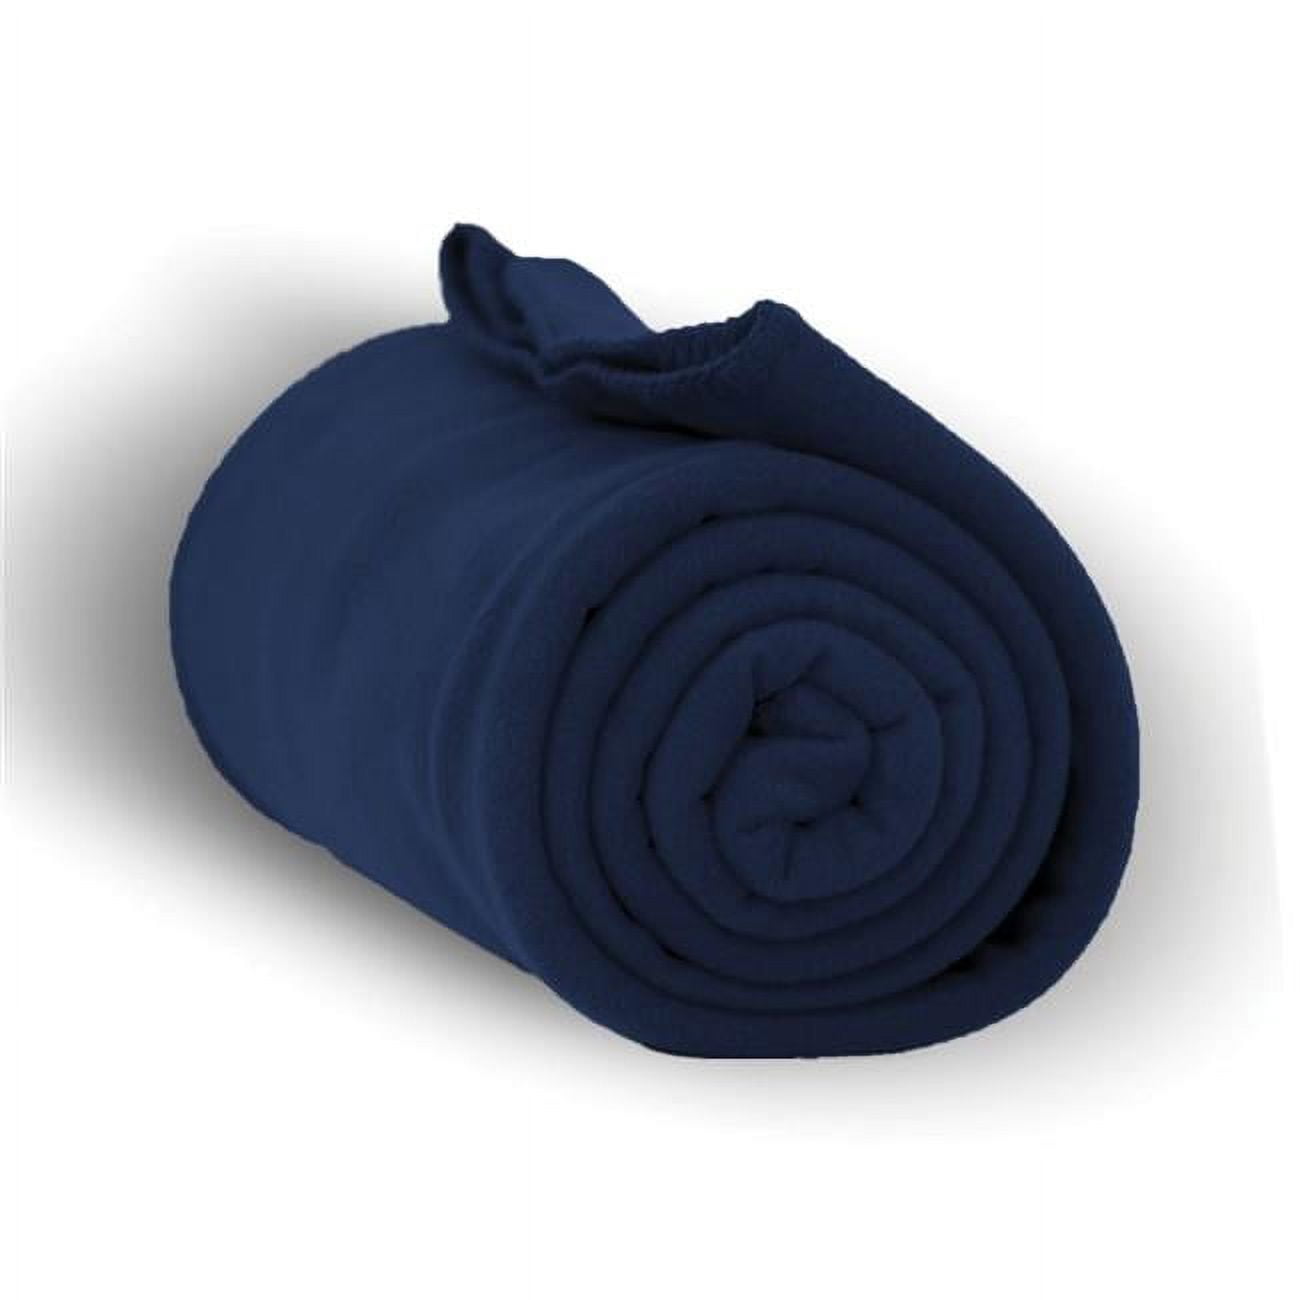 2327052 50 X 60 In. Heavy Weight Fleece Blanket Throw, Navy - Case Of 24